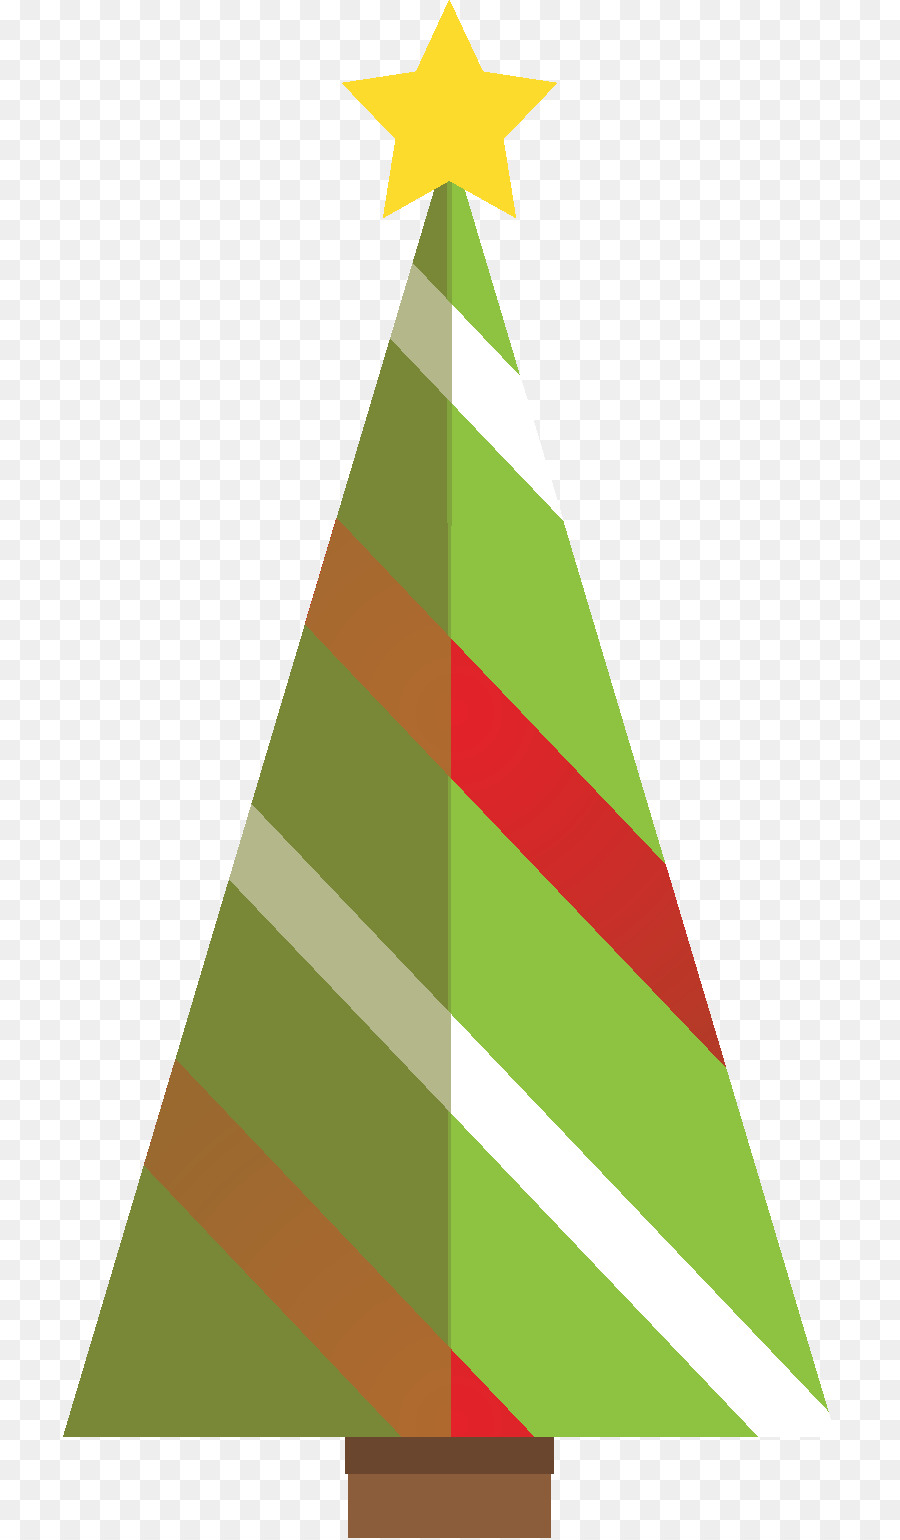 Sittard, Weihnachtsbaum, Santa Claus, Christmas market - Weihnachtsbaum